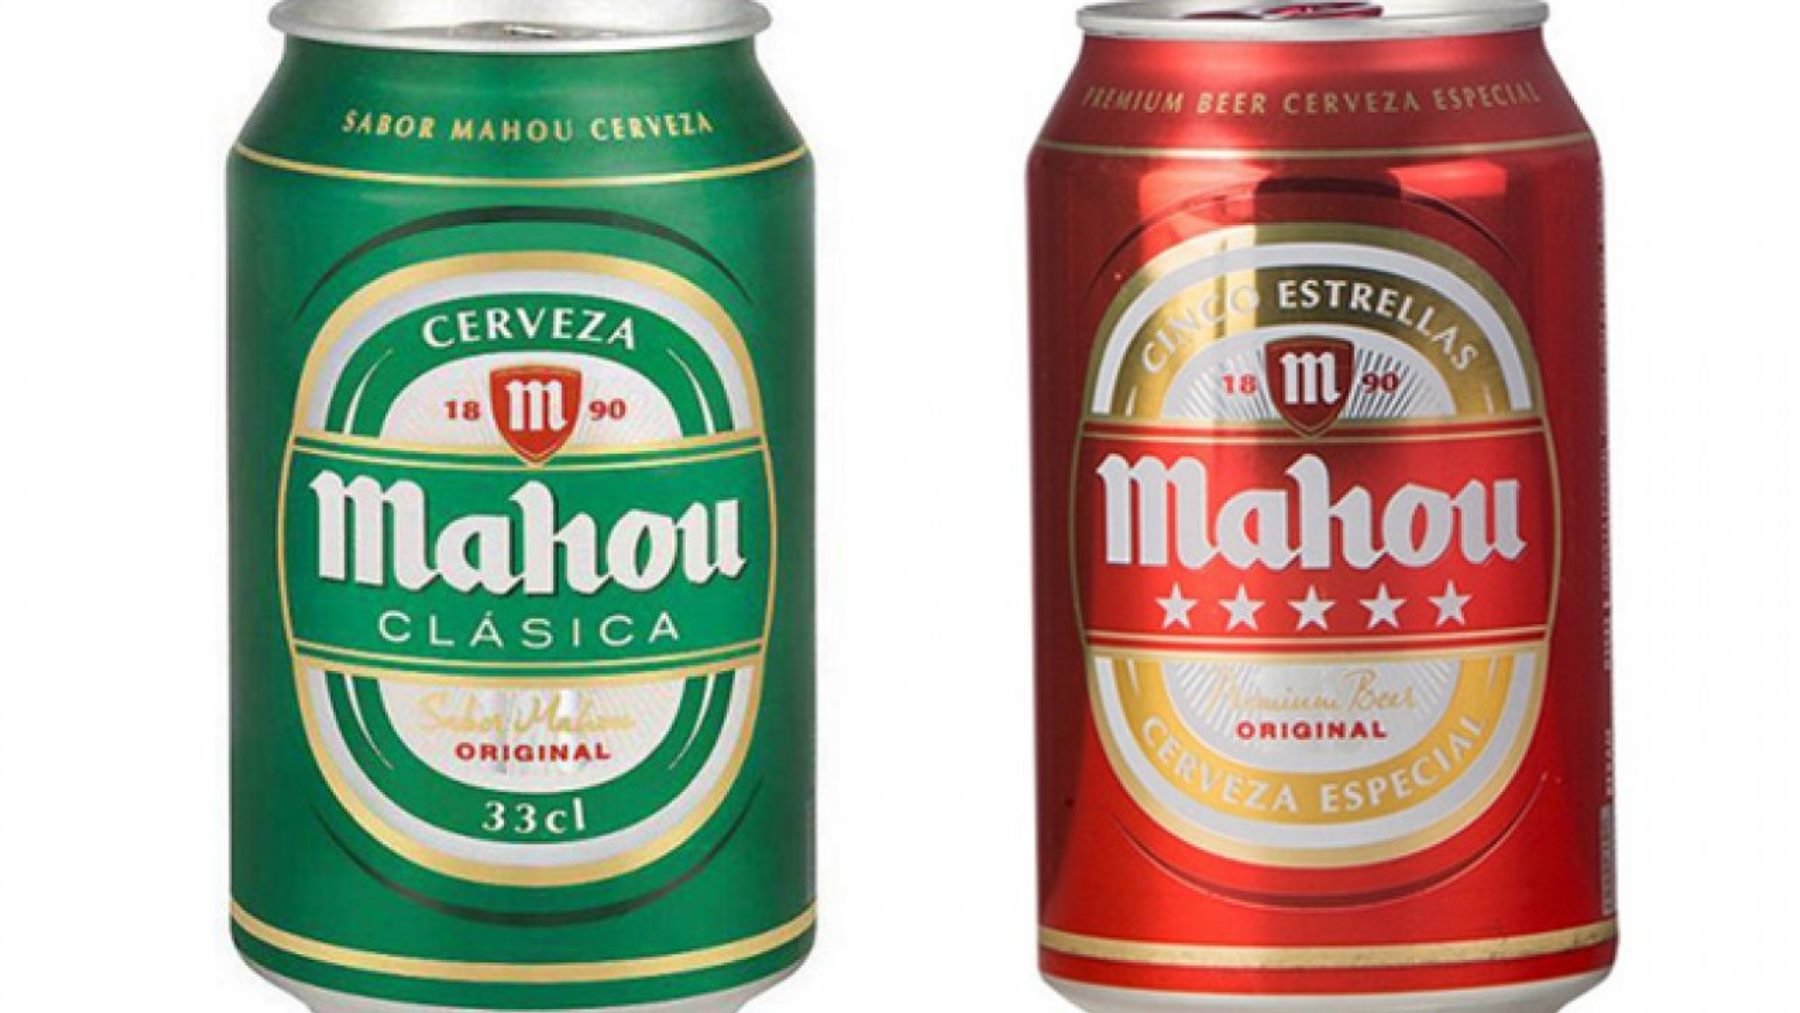 ¿Qué diferencia hay entre la cerveza Mahou roja y la verde?